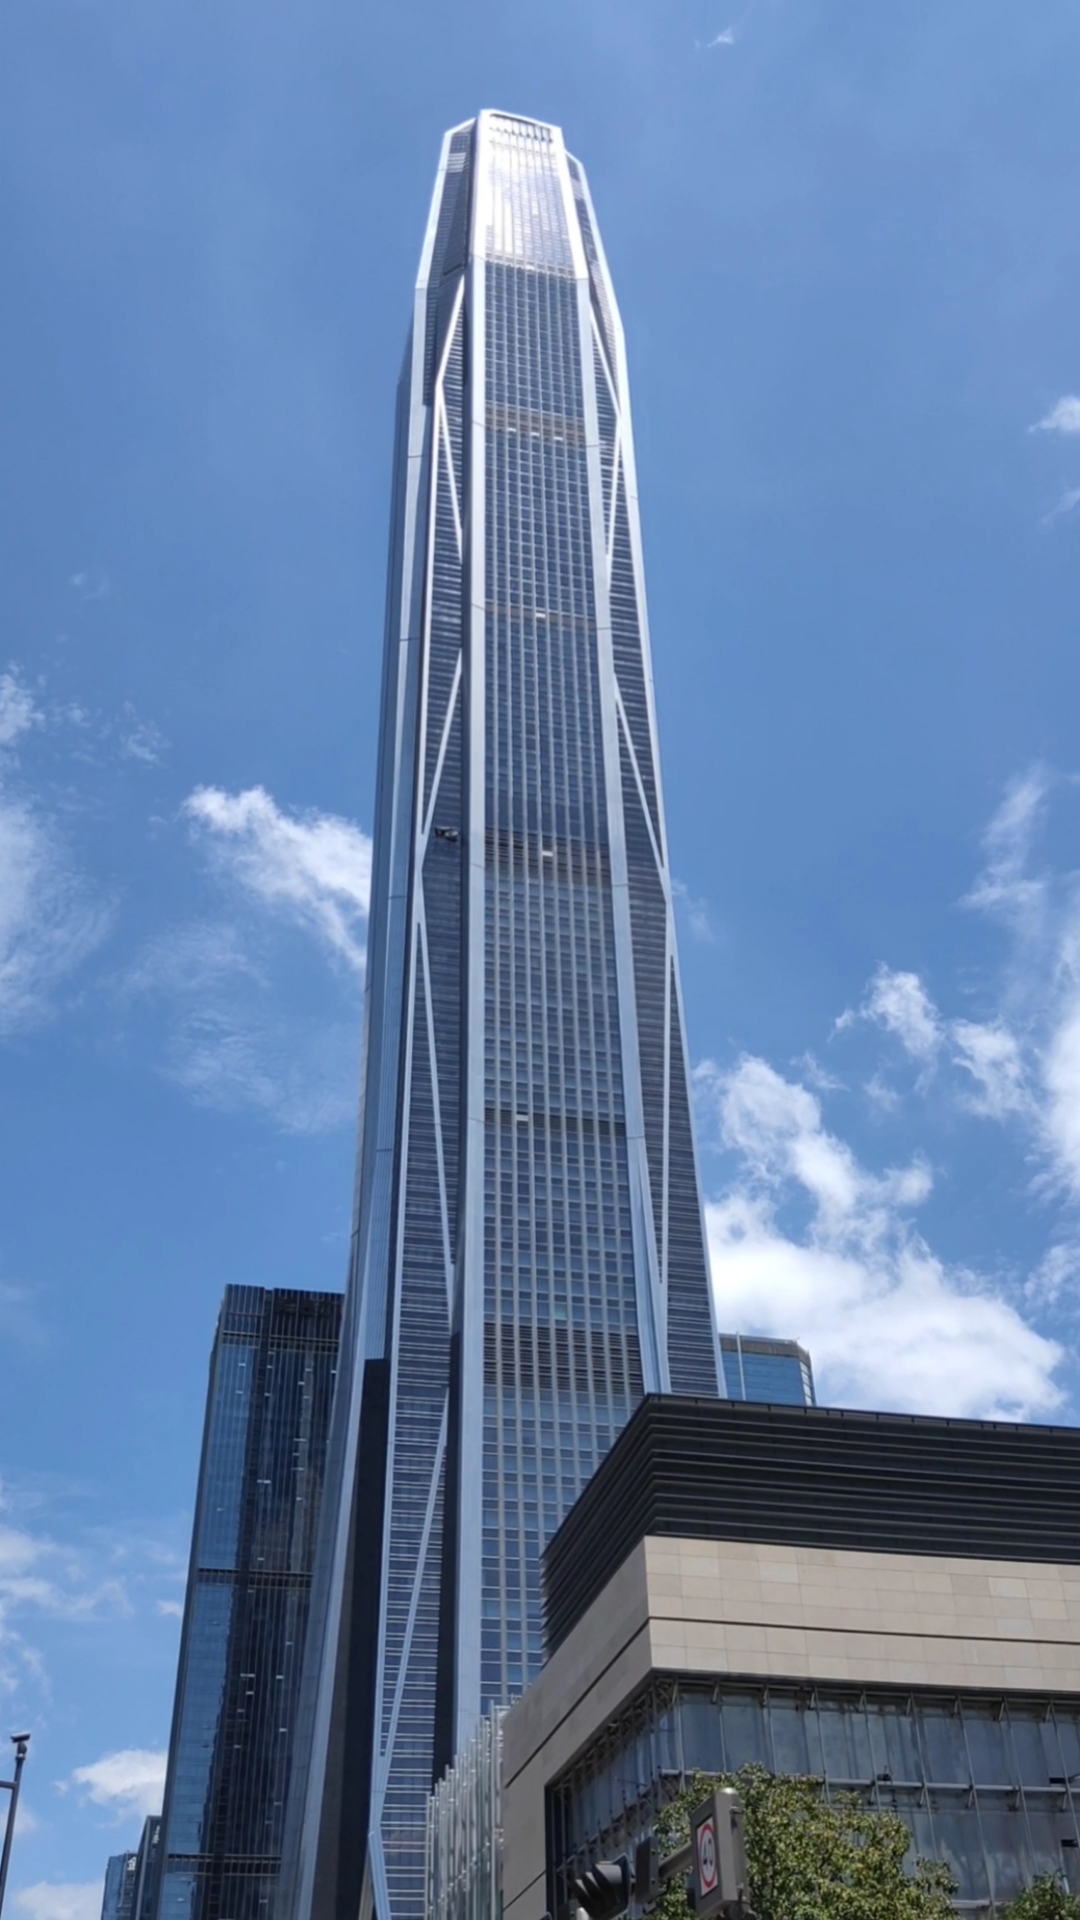 平安金融中心大厦是位列世界第四,中国第二的新地标式摩天楼